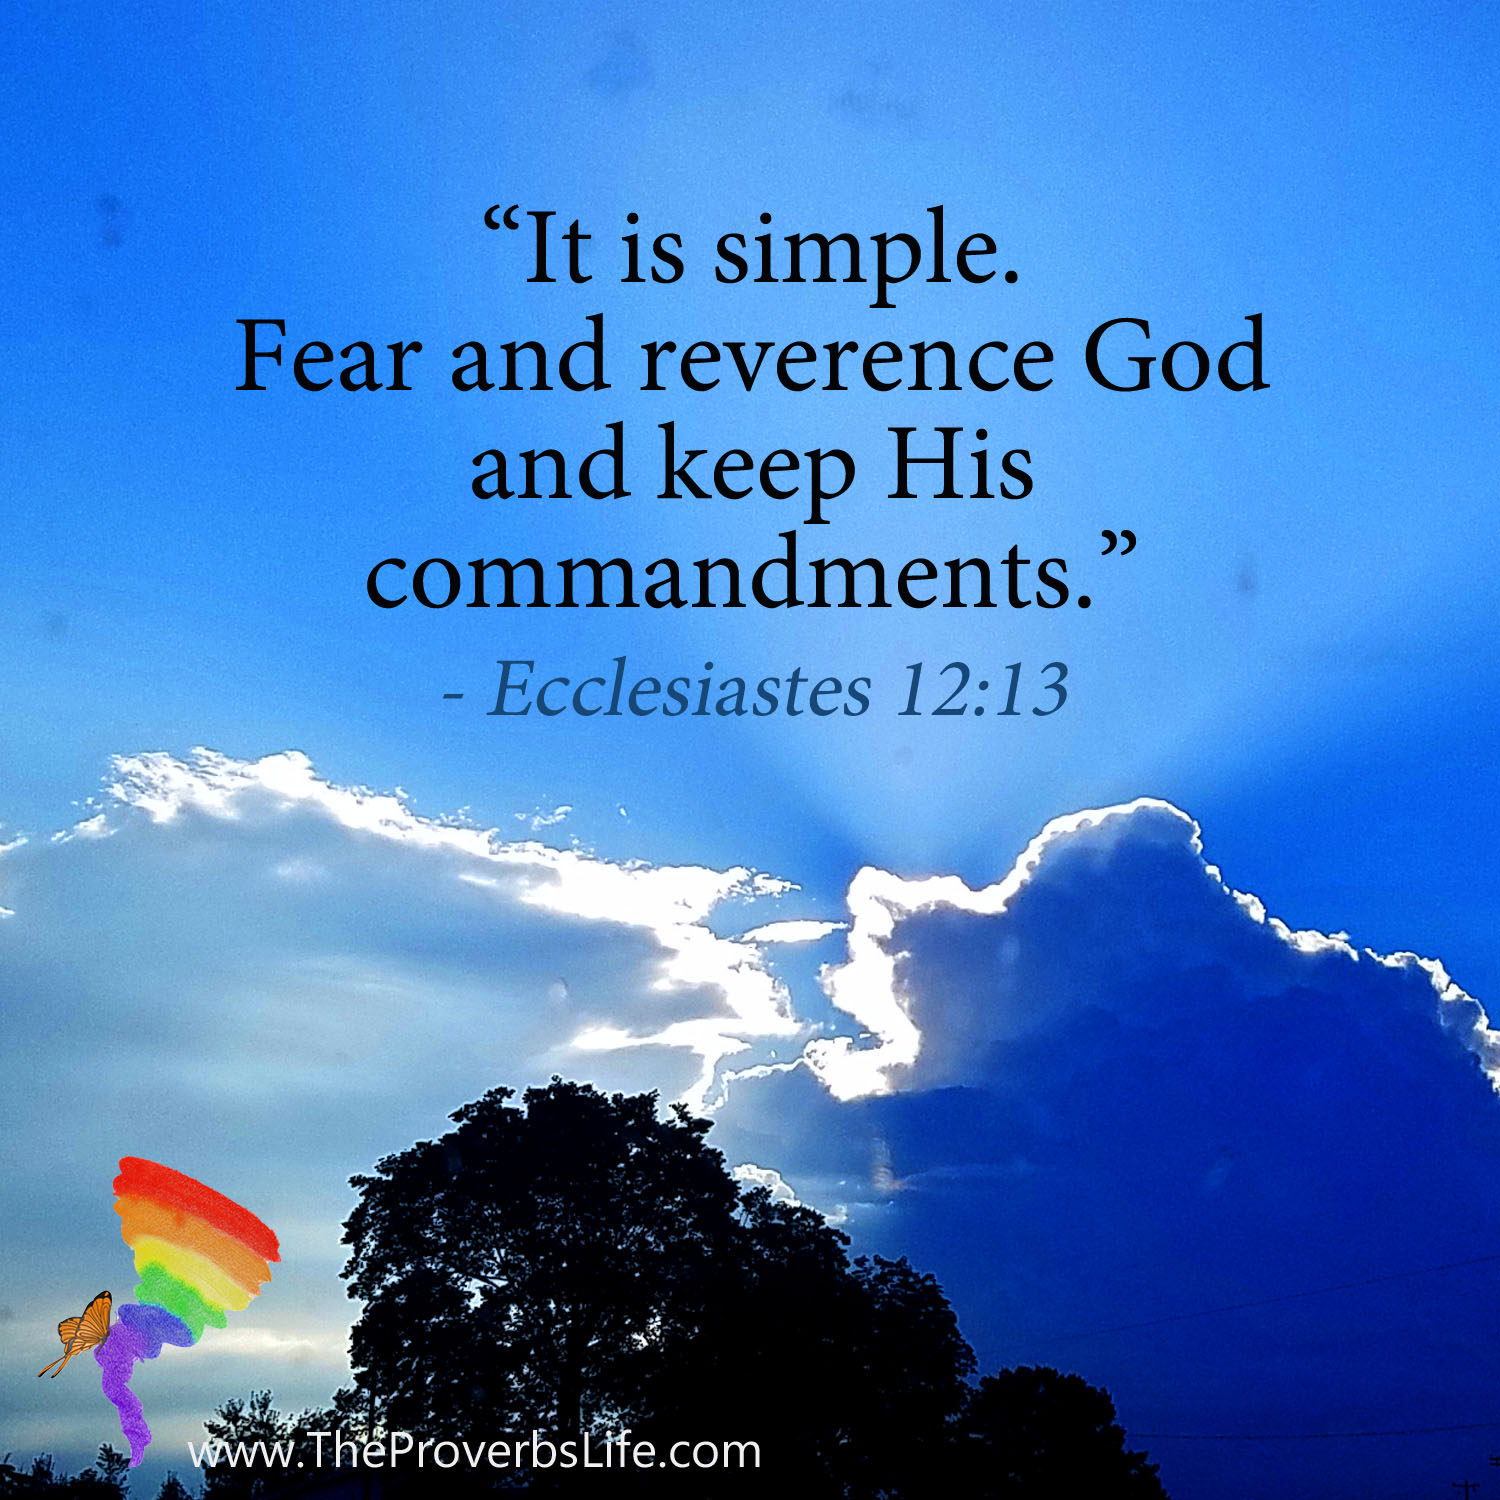 Scripture Focus - Ecclesiastes 12:13